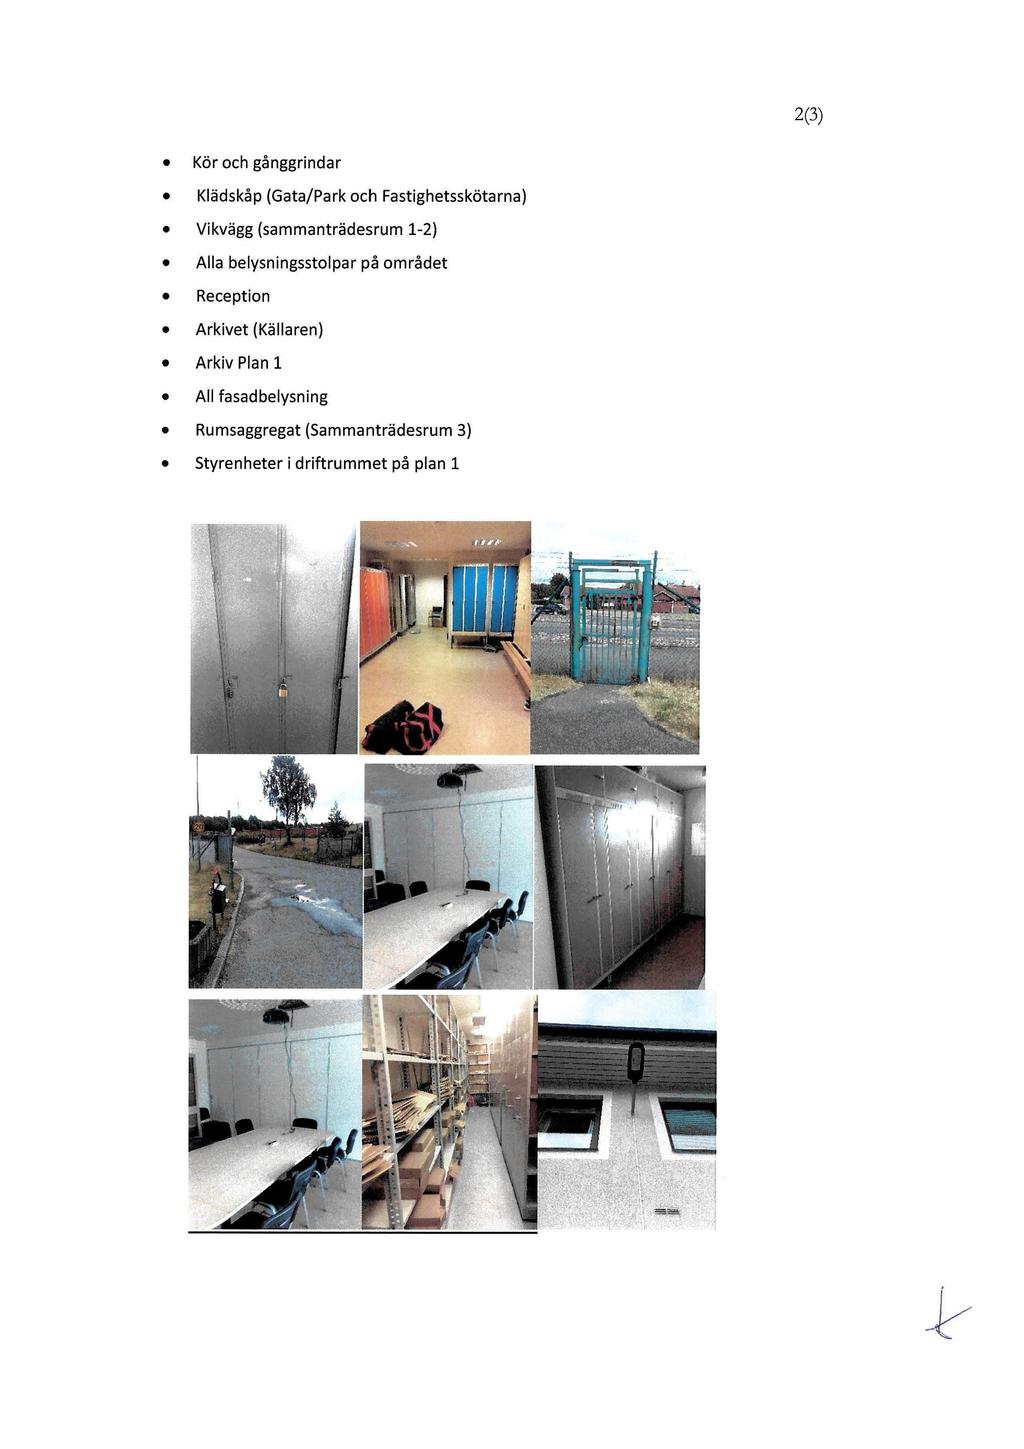 2(3) Kör och gånggrindar Arkiv Plan 1 All fasadbelysning Rumsaggregat (Sammanträdesrum 3) Klädskåp (Gata/Park och